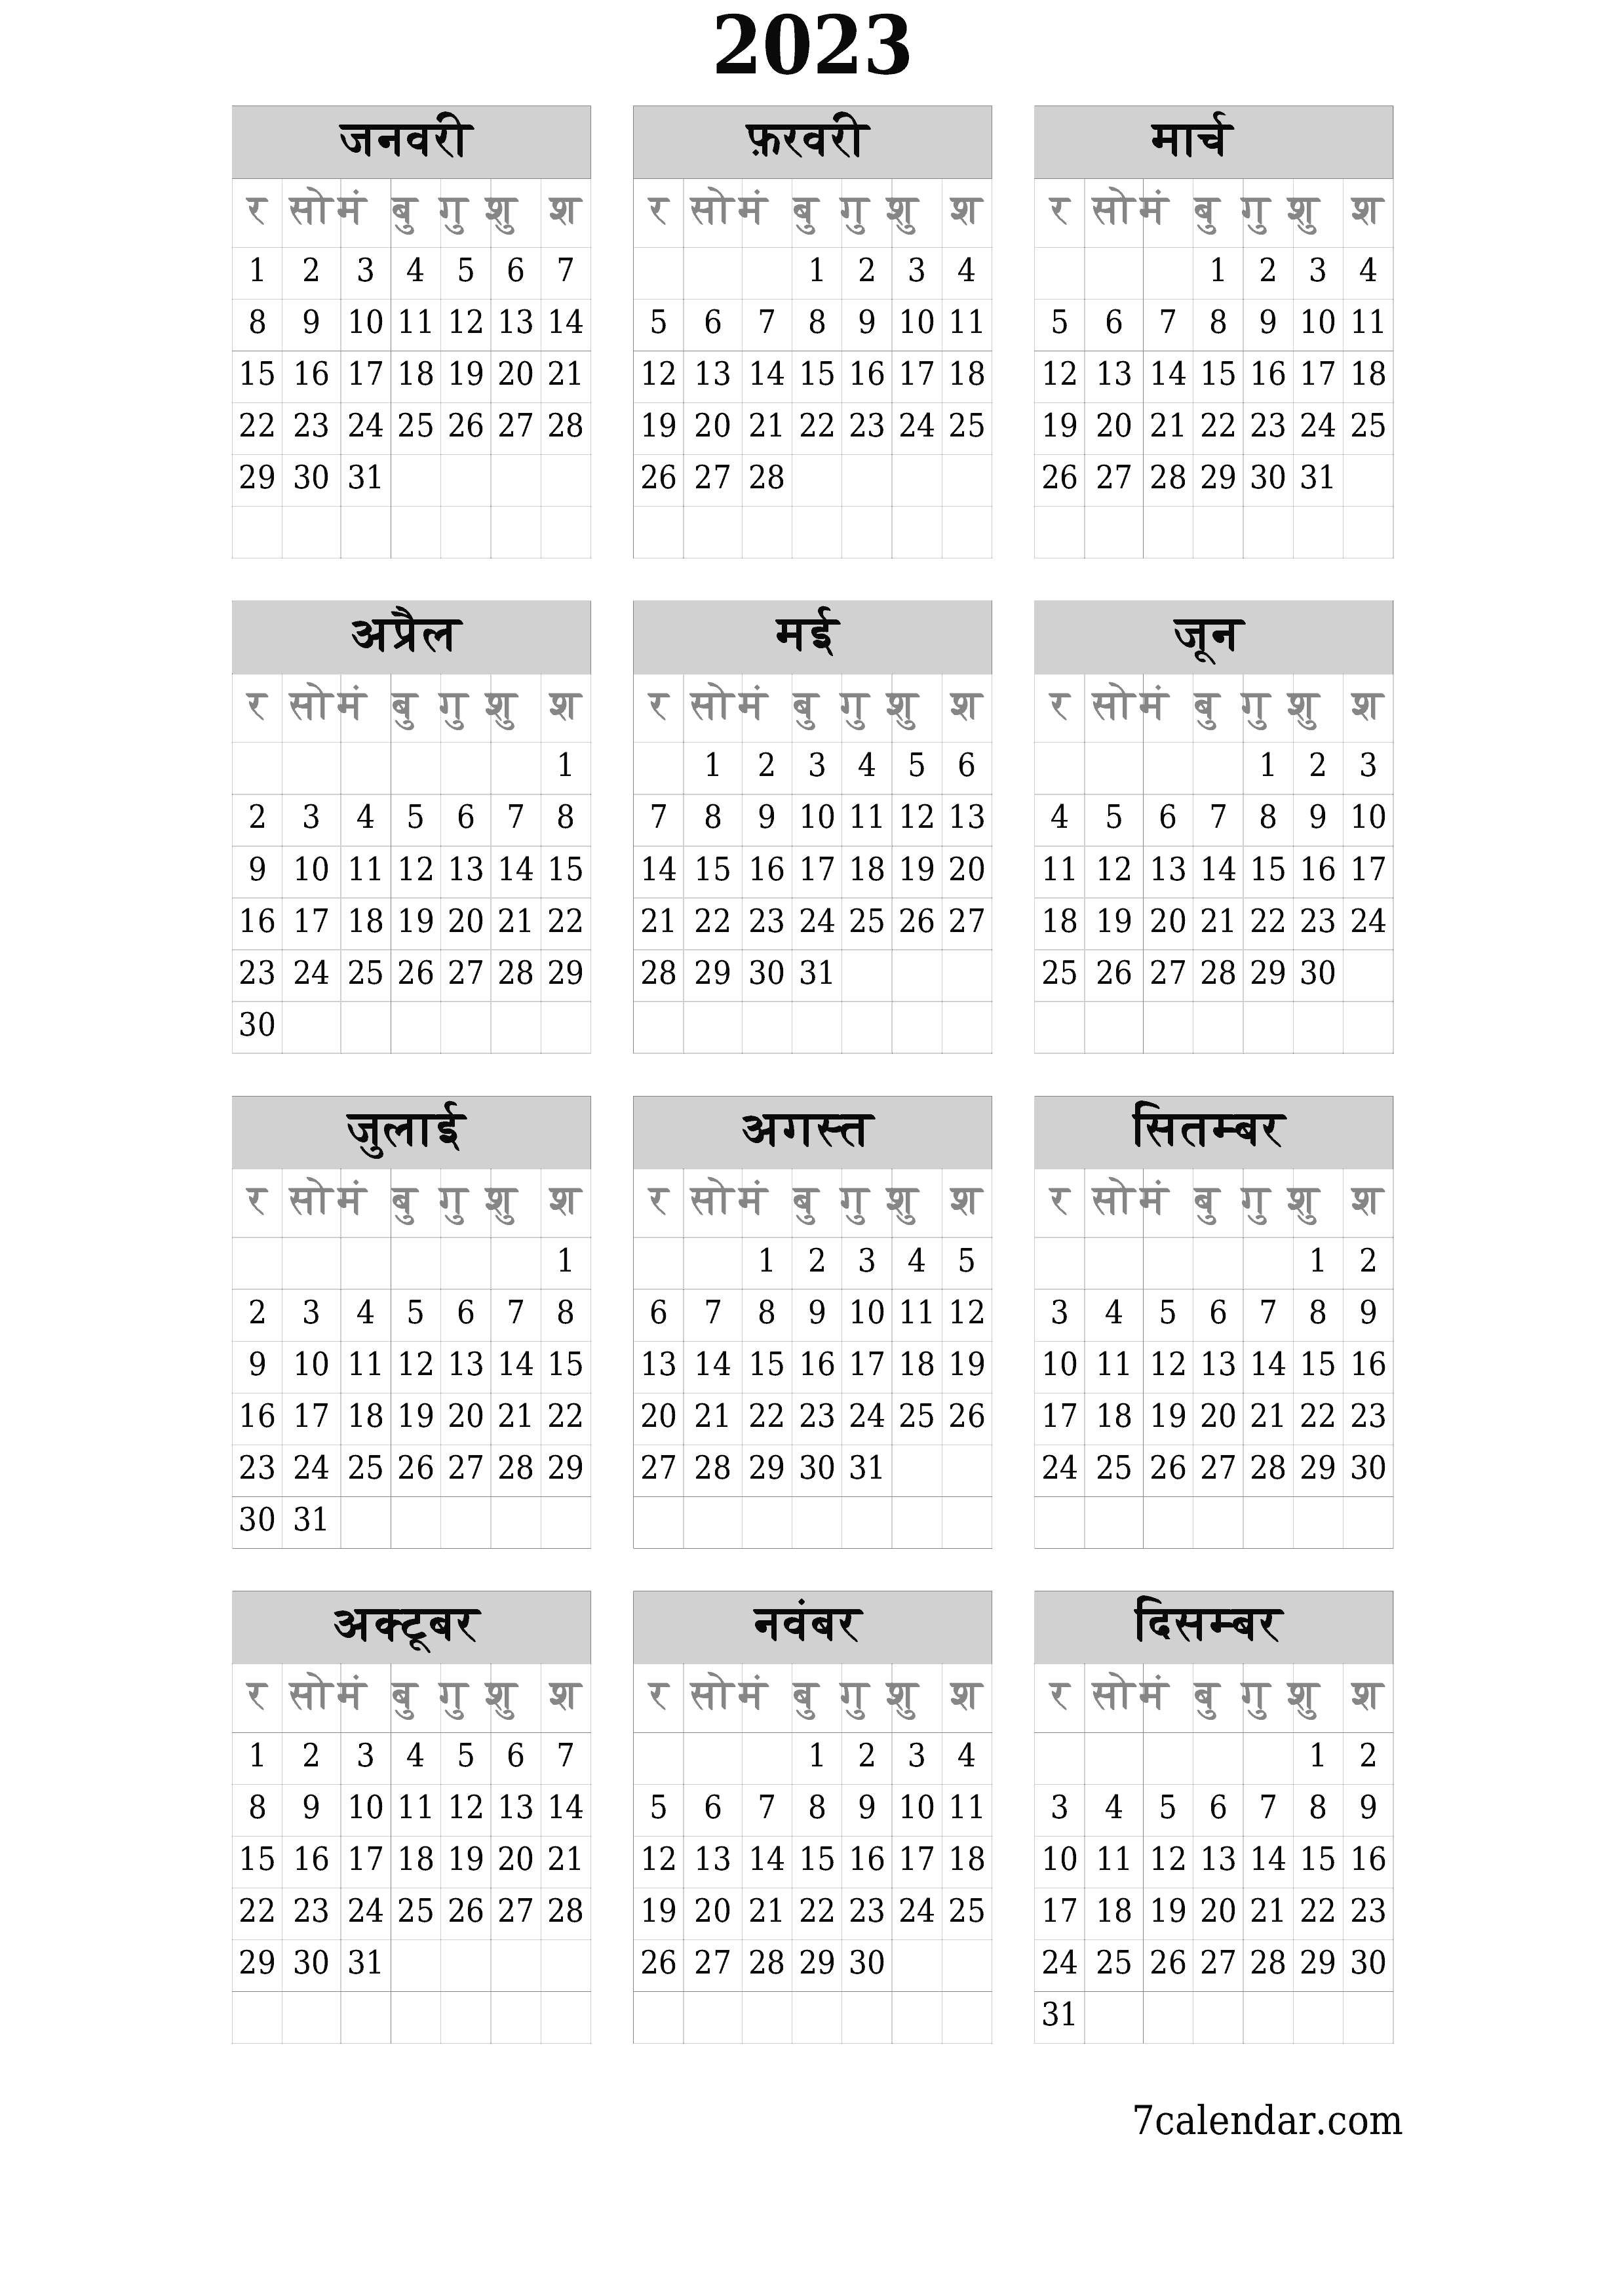 वर्ष 2023 के लिए खाली वार्षिक कैलेंडर पीडीएफ में सहेजें और प्रिंट करें PNG Hindi - 7calendar.com